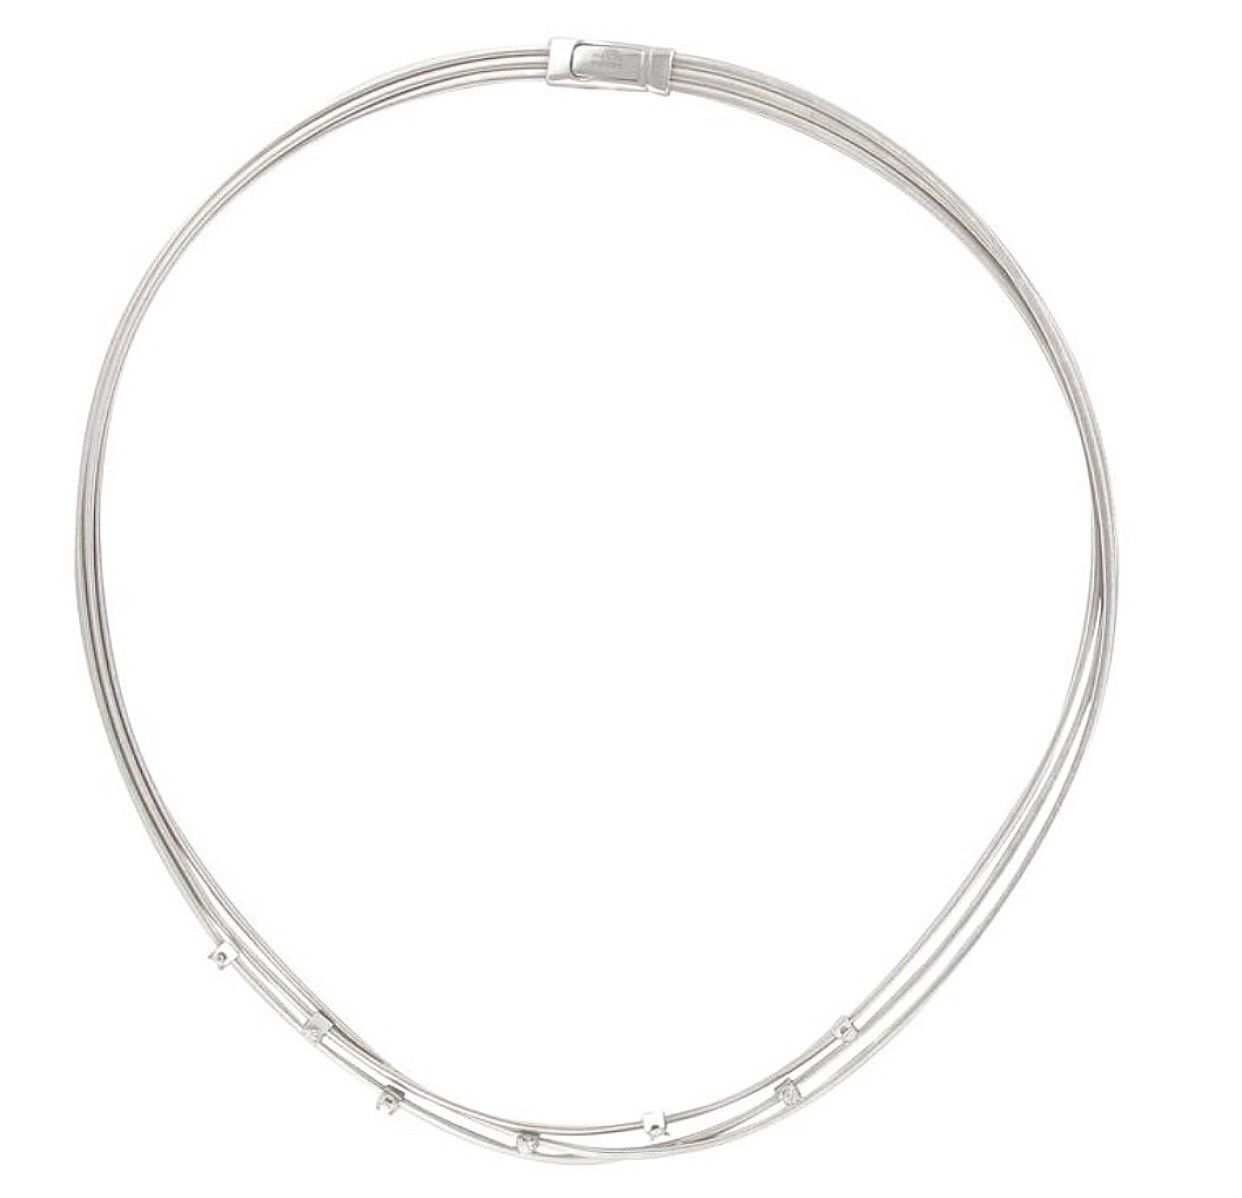 Marco Bicego Goa Diamond Necklace 18k - Image 2 of 4